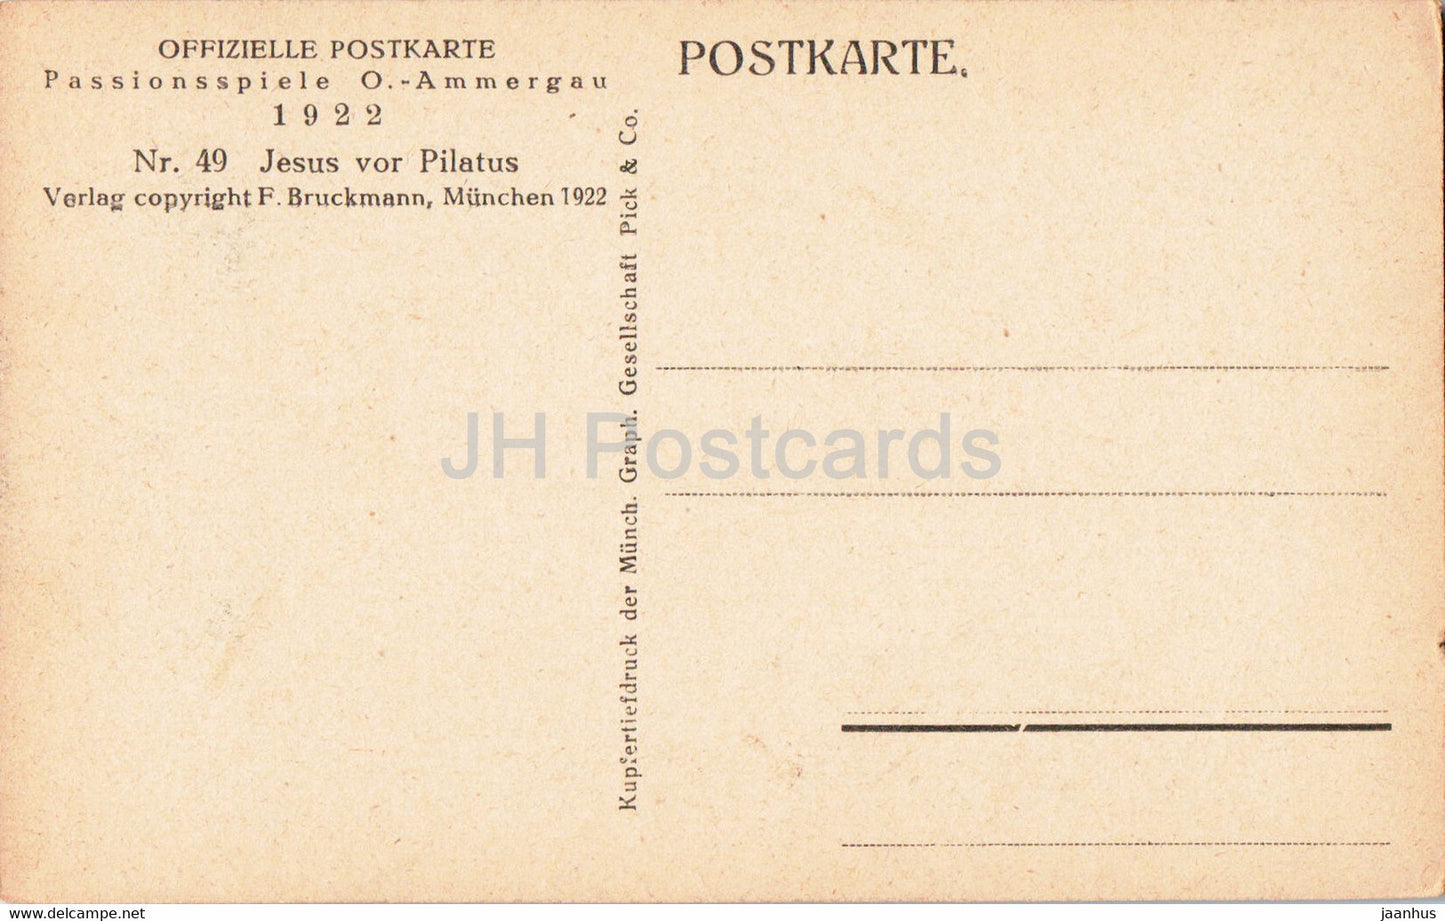 Passionsspiele O Ammergau 1922 - Jesus Vor Pilatus - acteurs - théâtre - carte postale ancienne - Allemagne - inutilisé